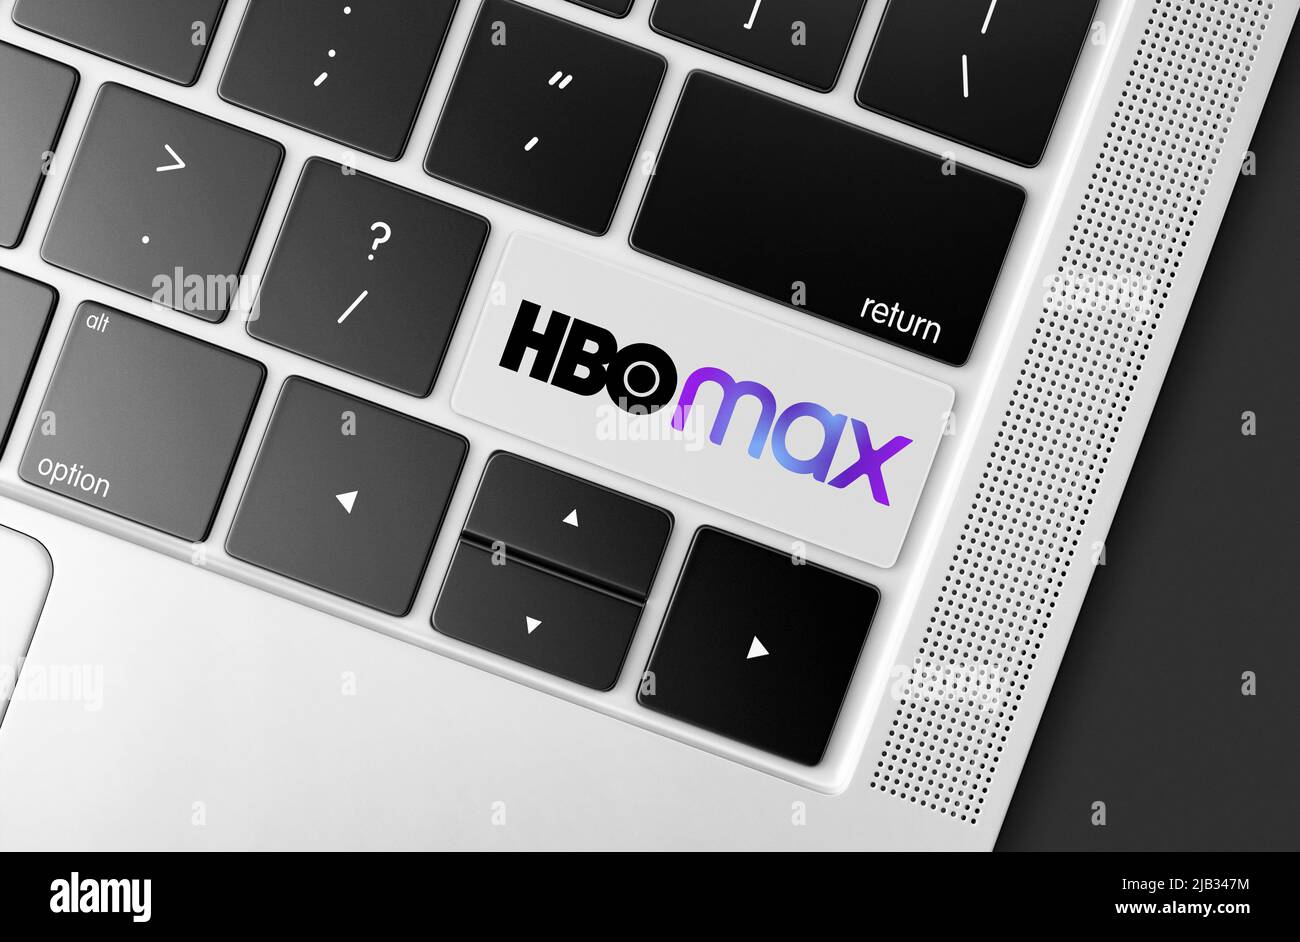 Touche de plate-forme vidéo HBO Max dédiée sur le clavier de l'ordinateur, image conceptuelle des communications globales Banque D'Images